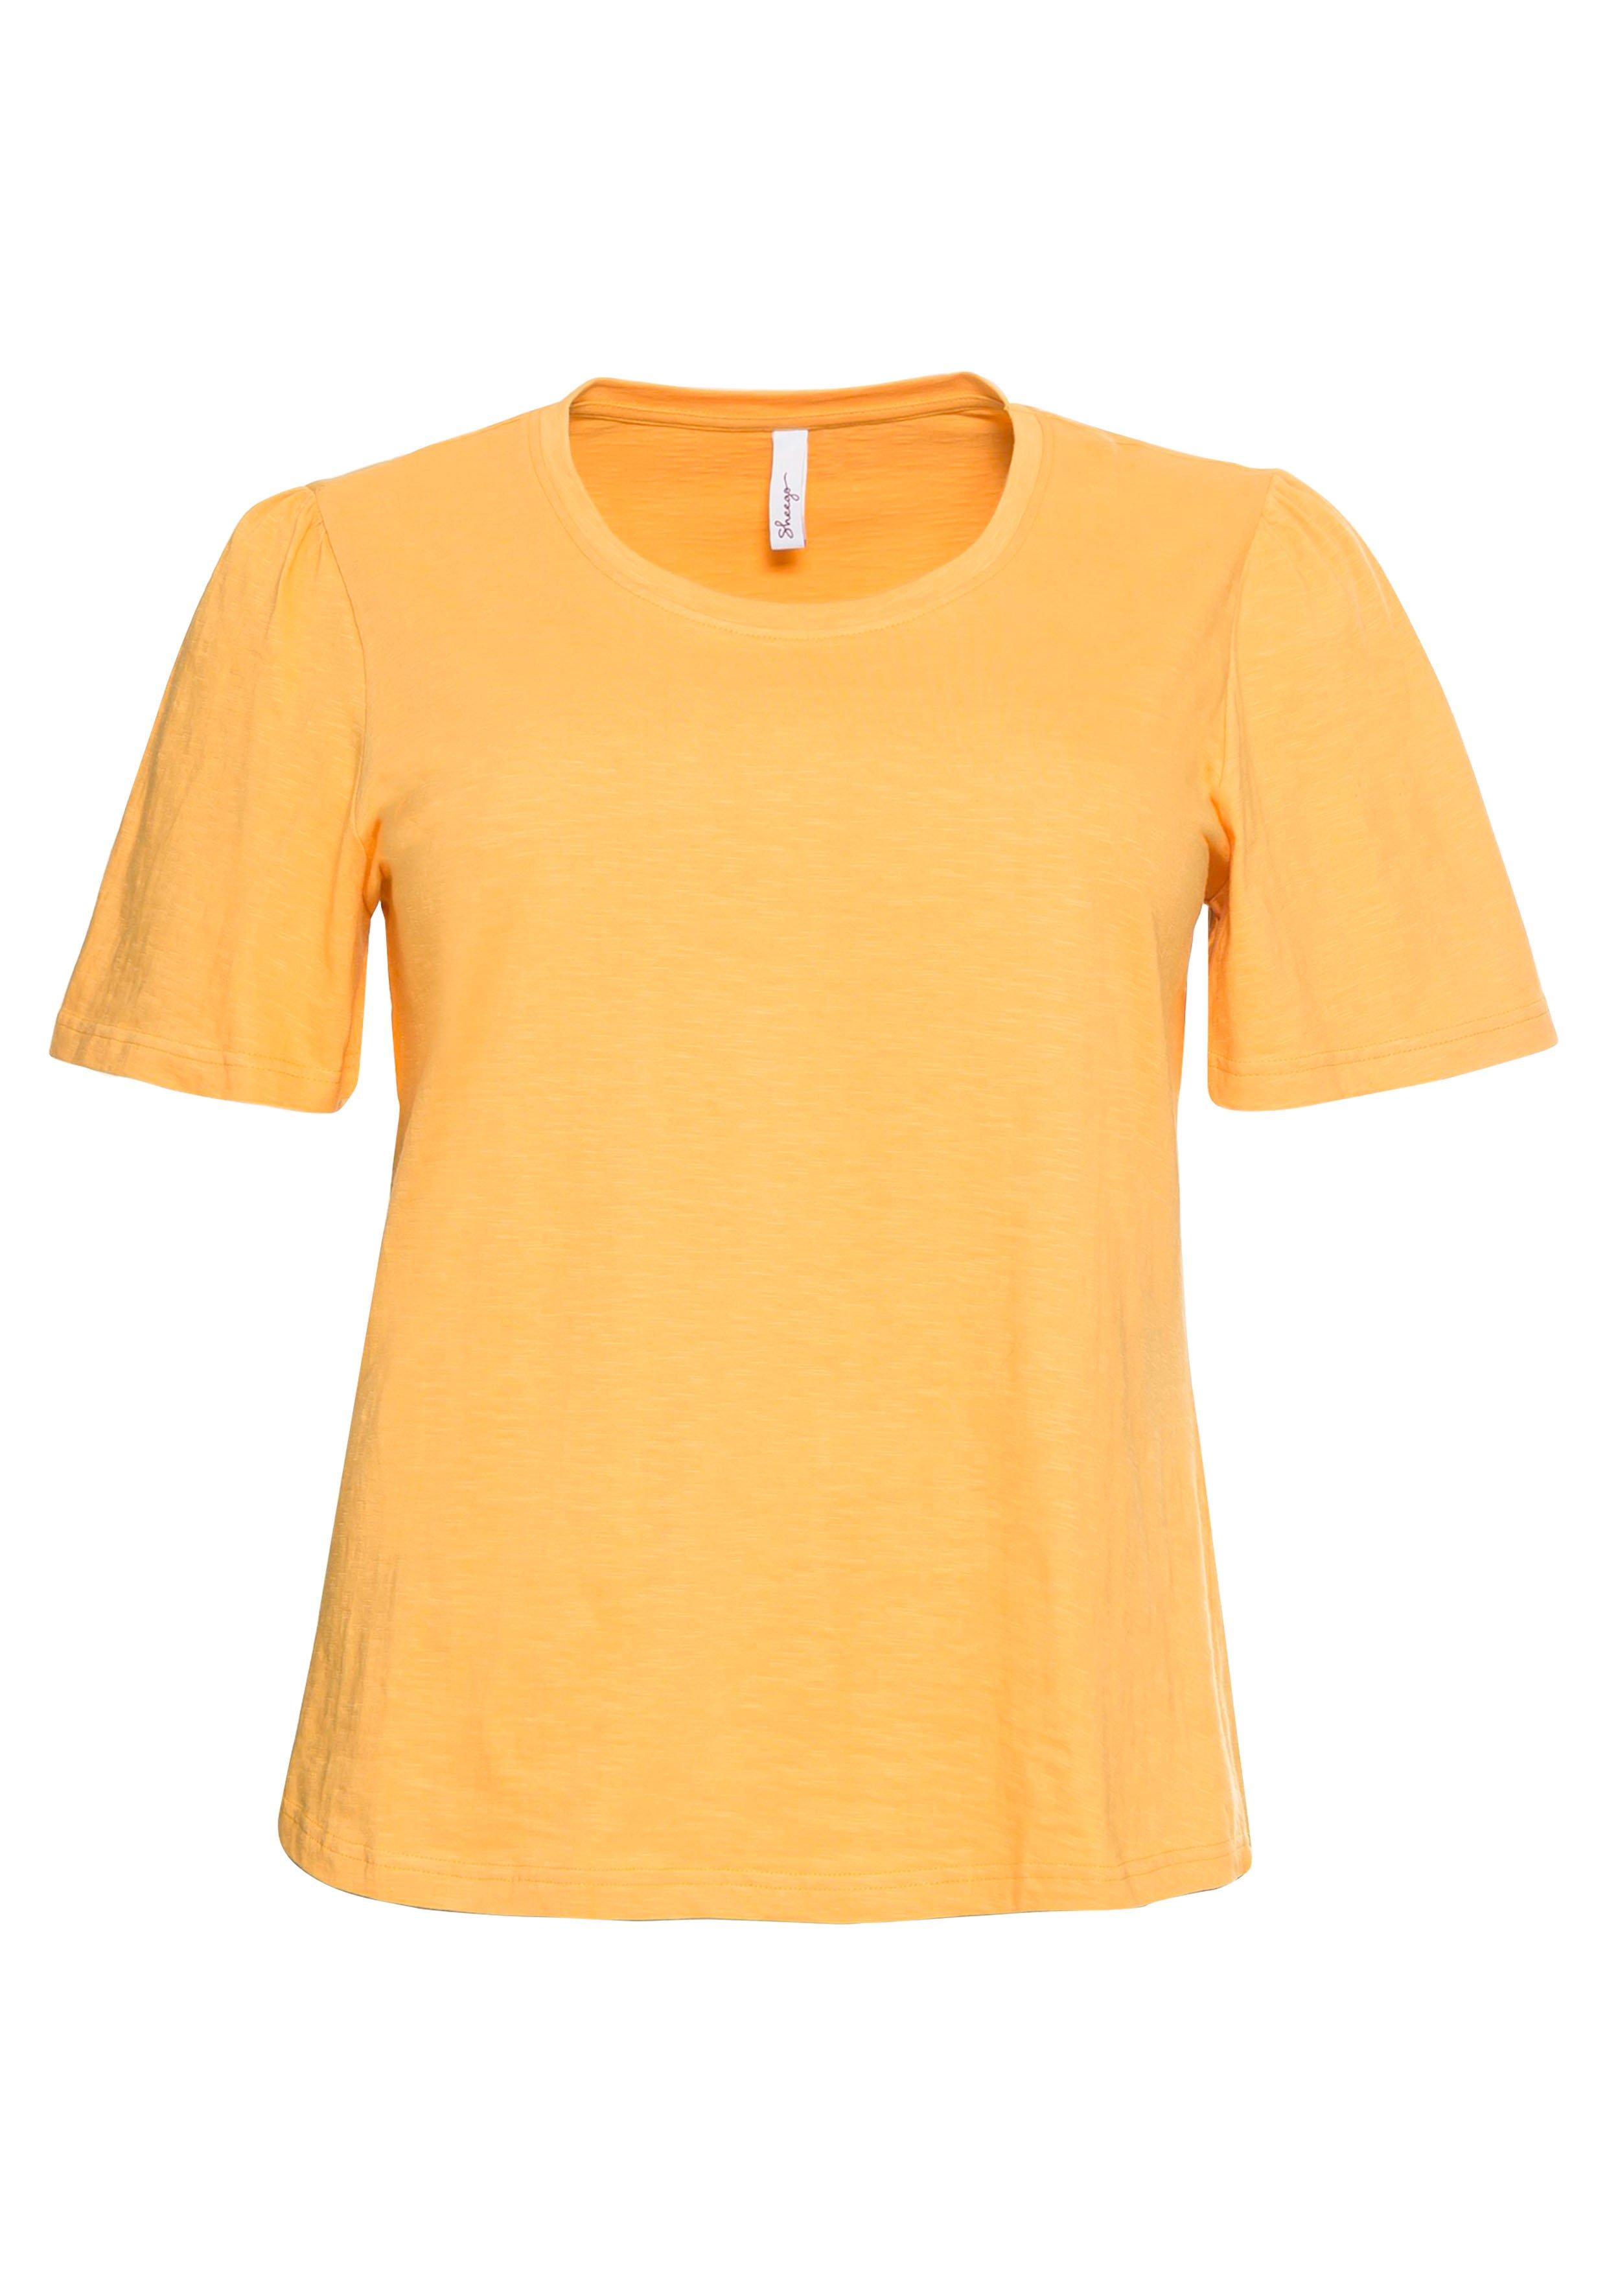 Flügelärmeln, apricot | aus reiner Shirt sheego Baumwolle kurzen - mit